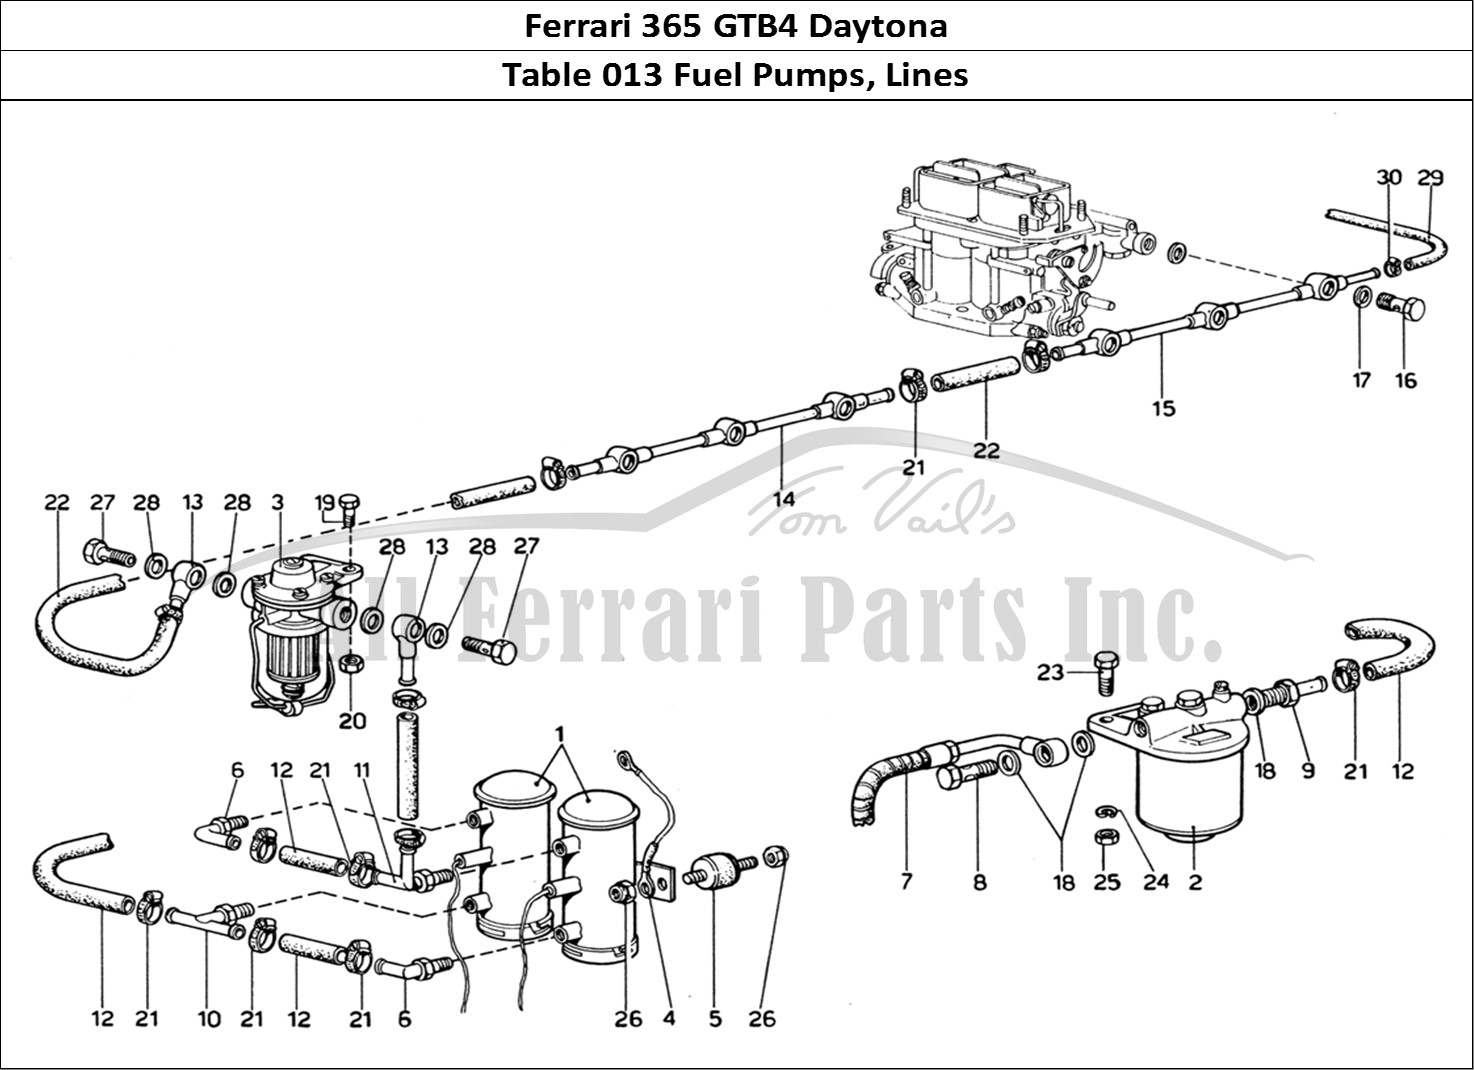 Ferrari Parts Ferrari 365 GTB4 Daytona (1969) Page 013 Fuel Pumps & Fuel Pipes